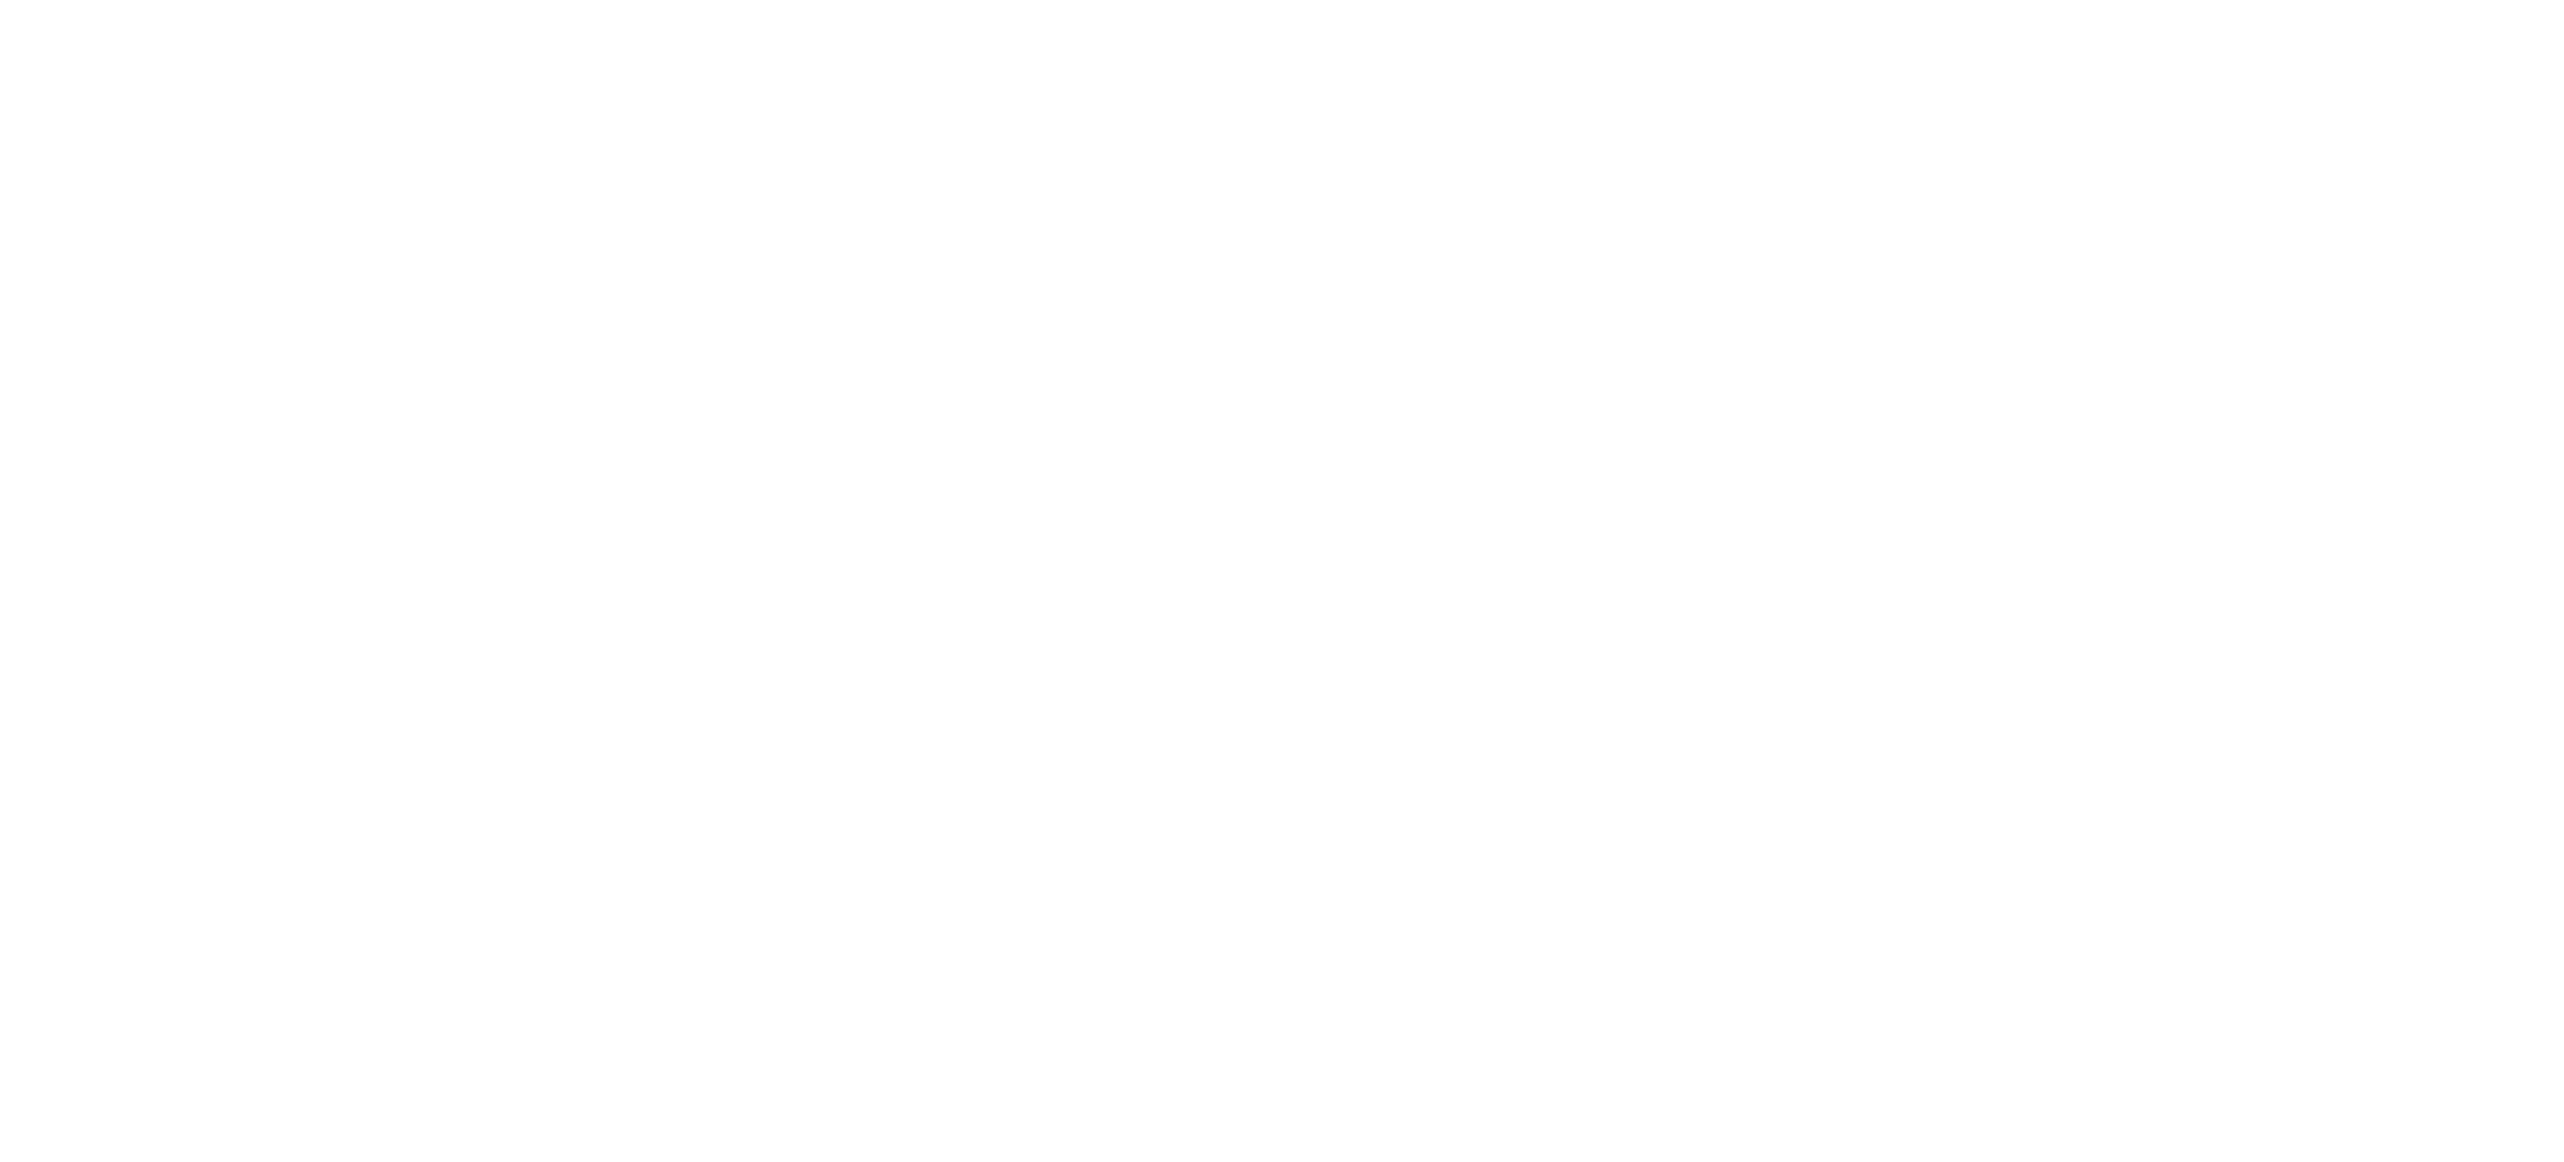 All Dirt Roads Taste of Salt logo